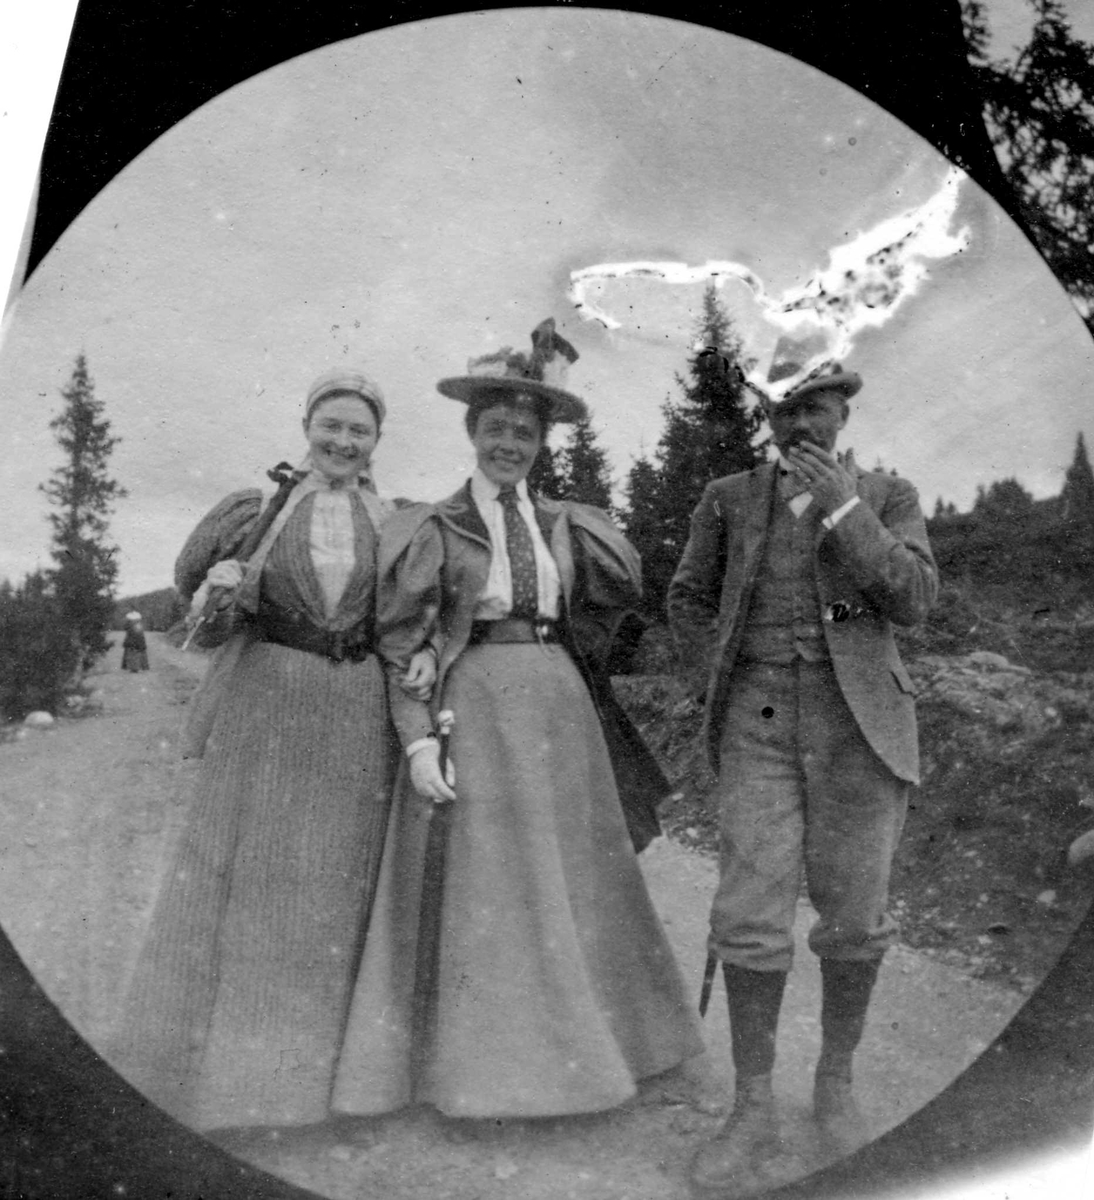 Golå, Sør-Fron, Oppland. Frk. Viborg, senere fru Scott Hansen, hennes søster og Storm på skogsvei.